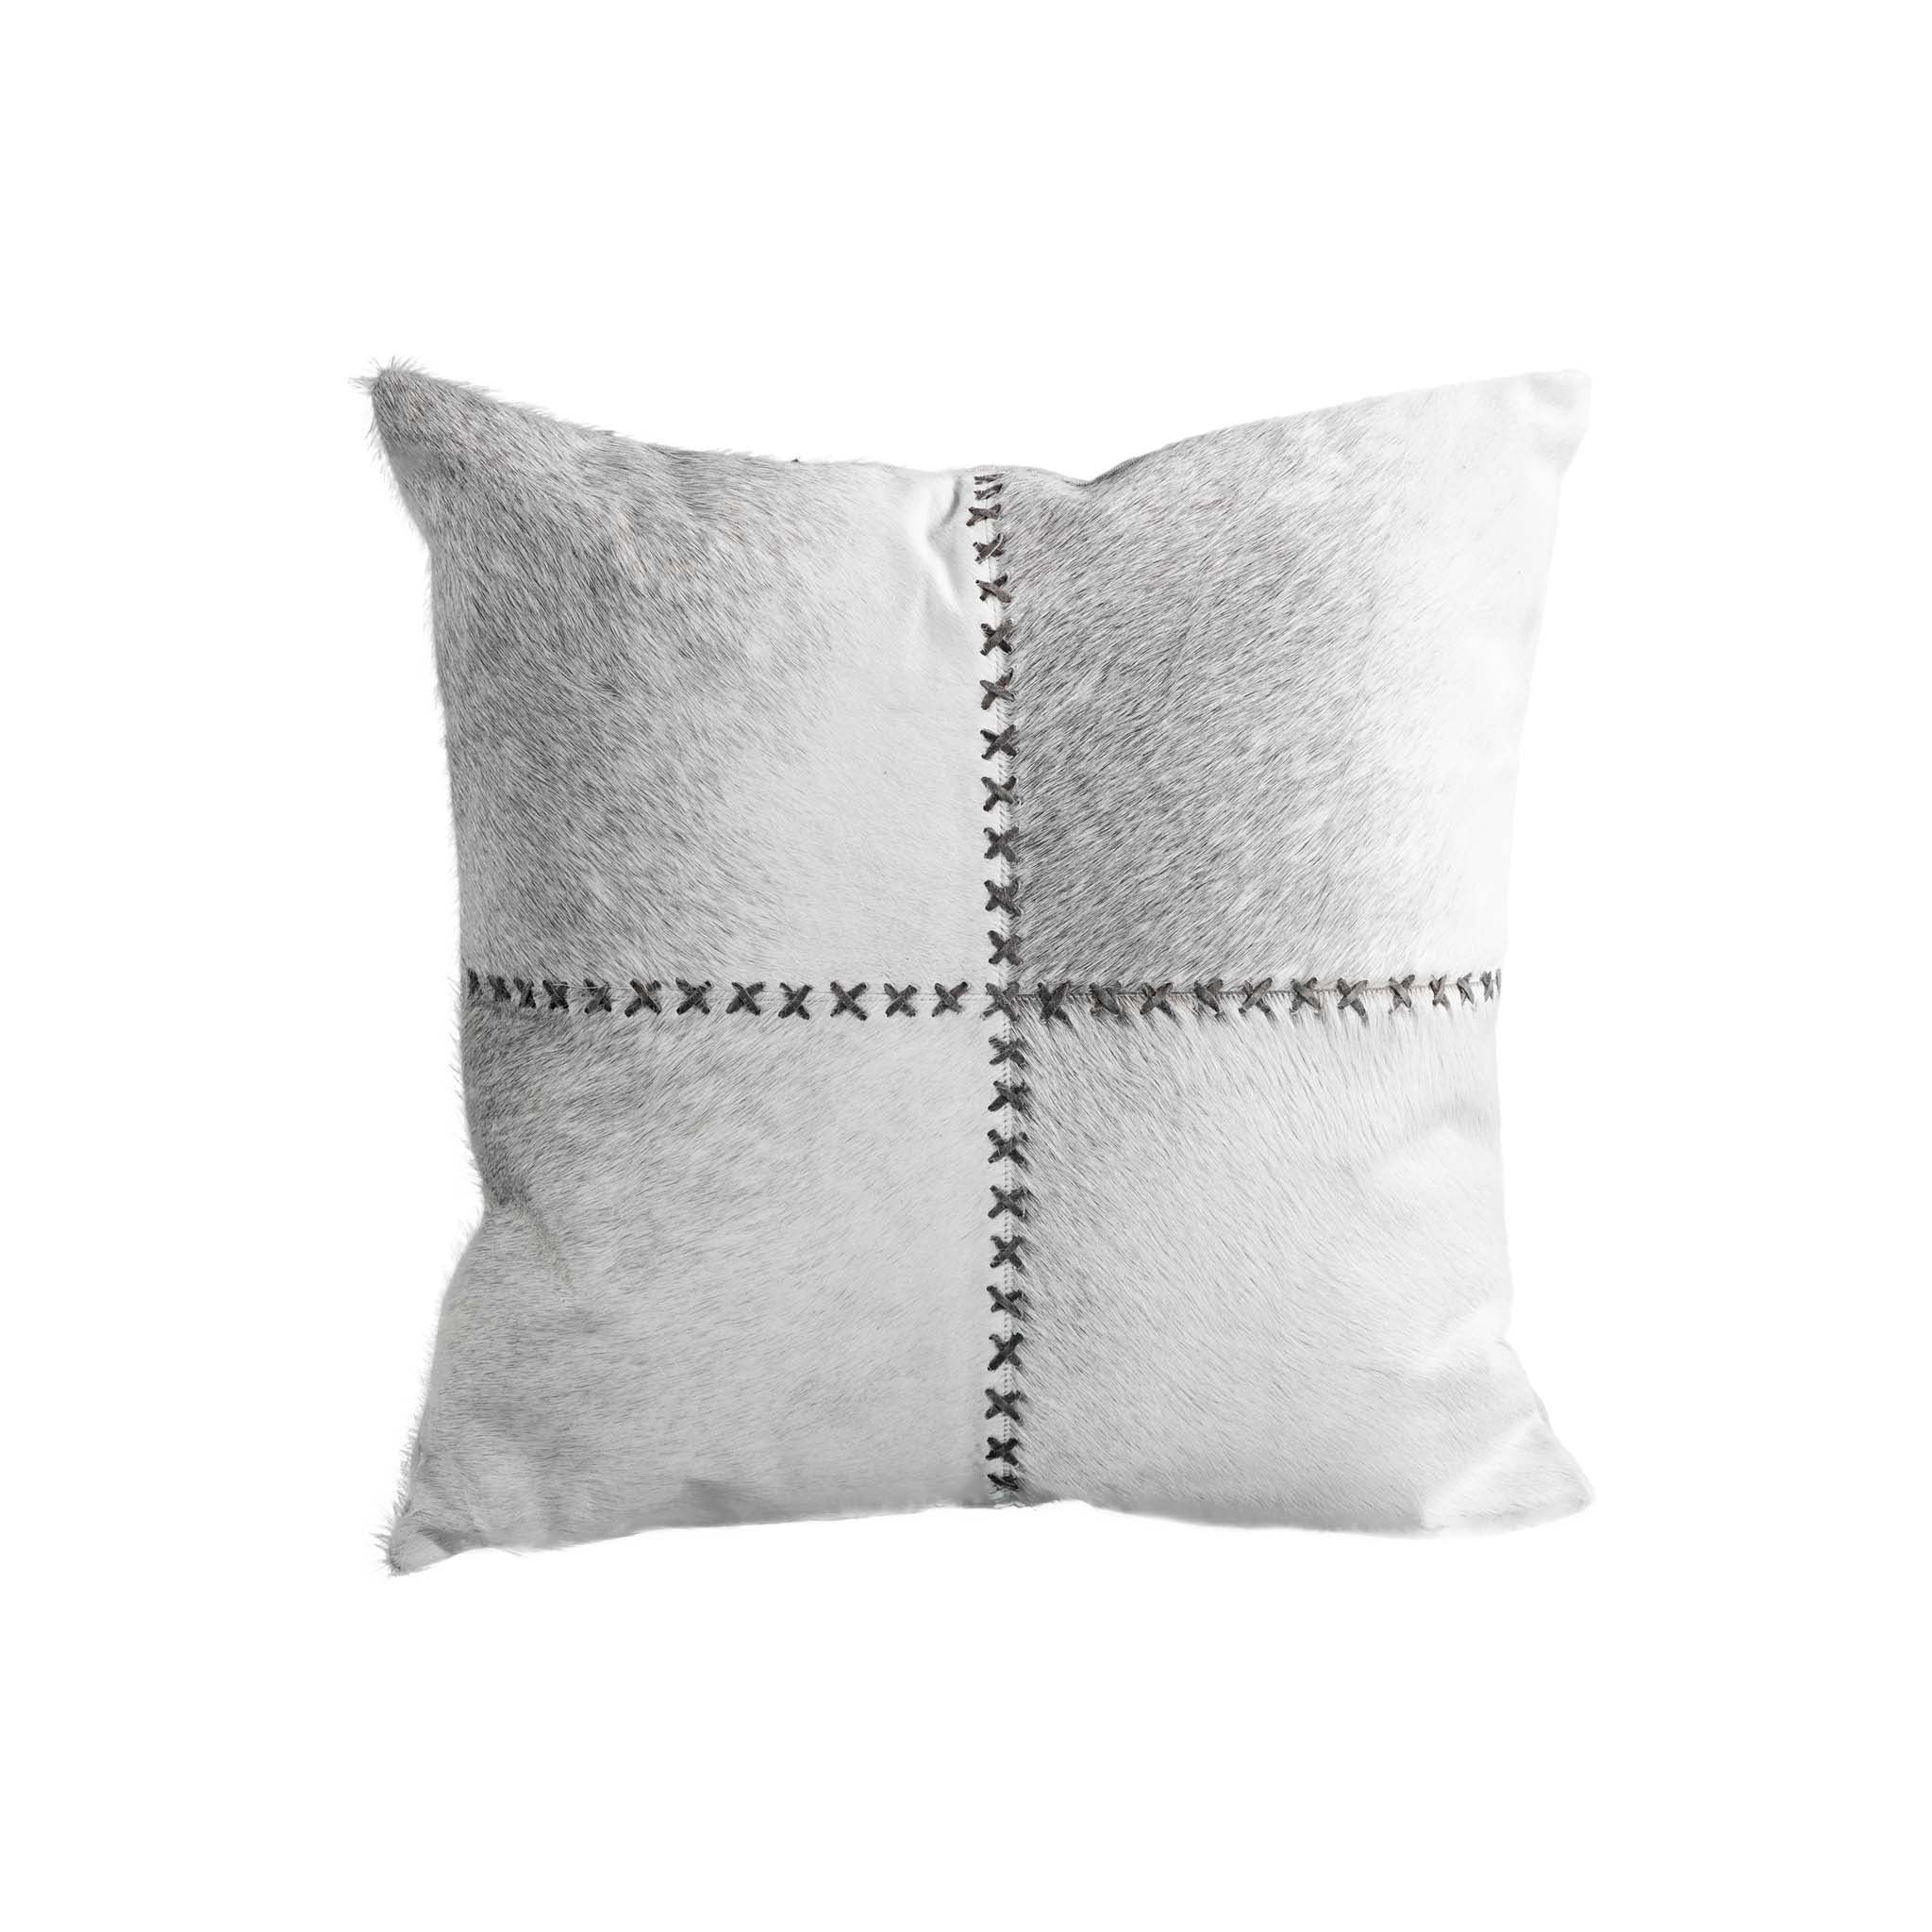 Kennecott Pillow